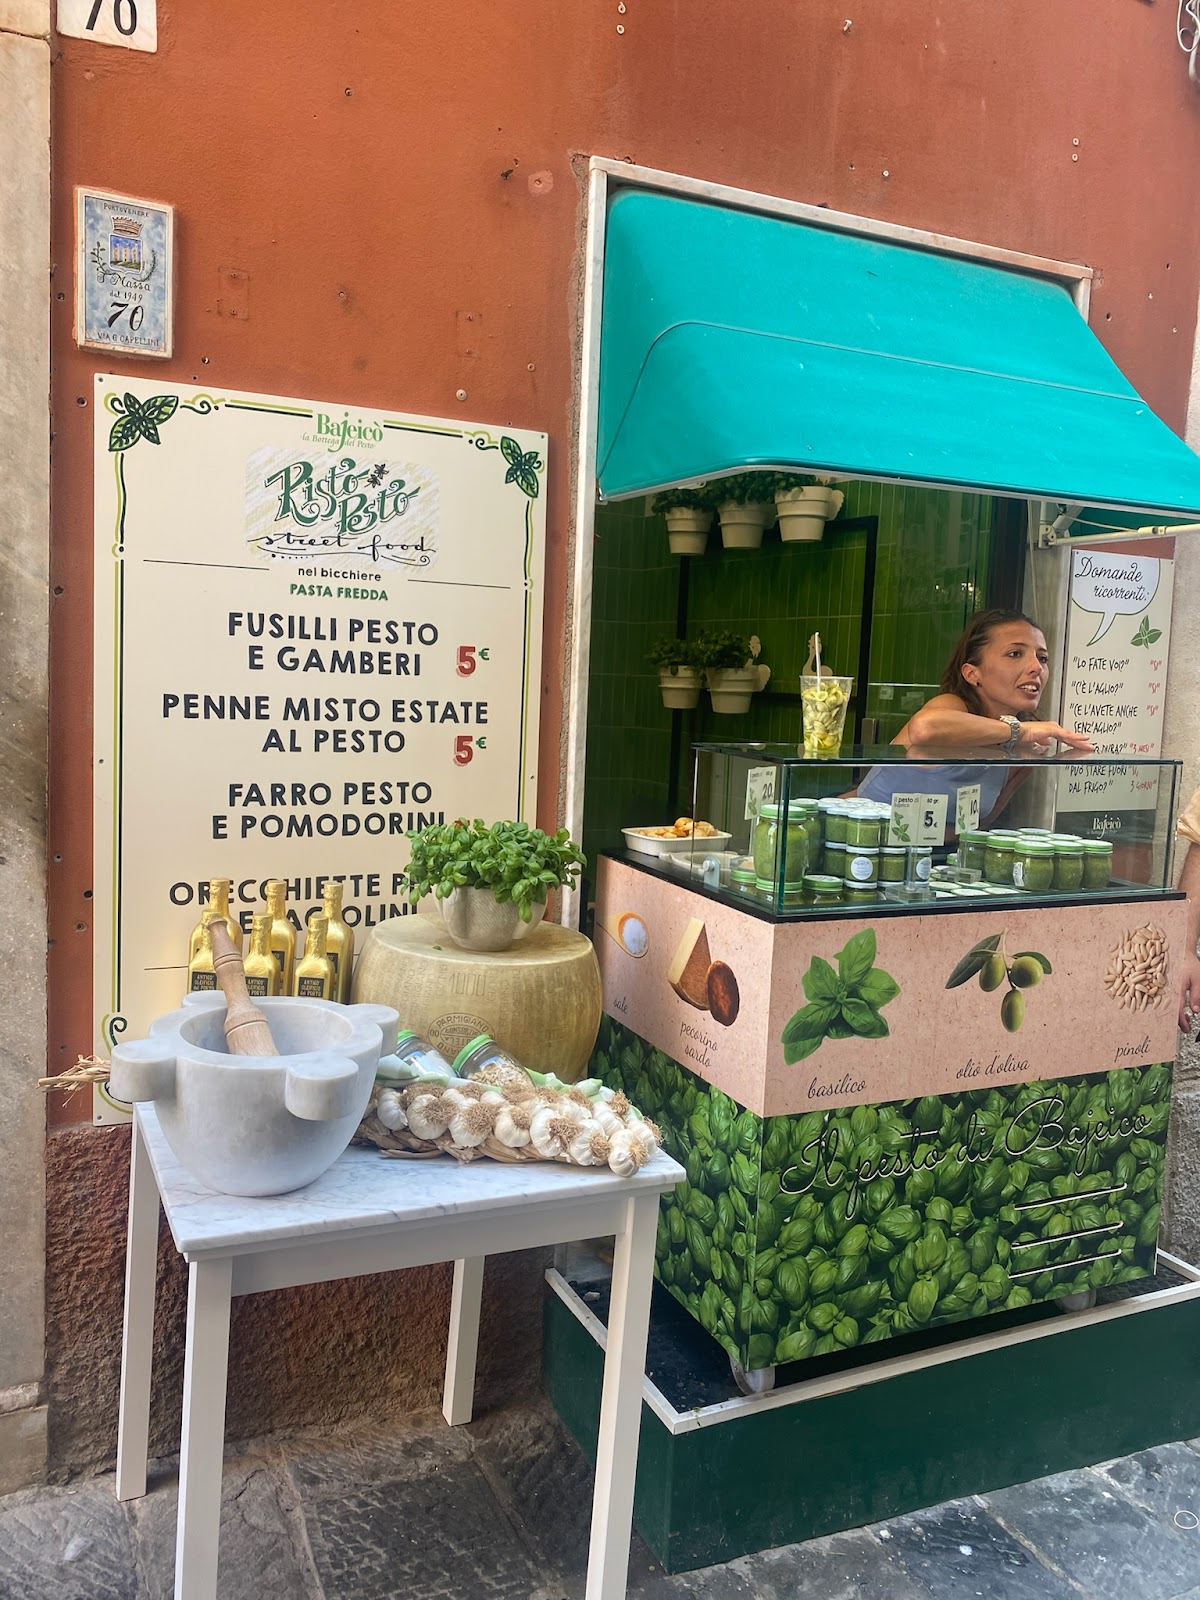 Les spécialités gastronomiques à Gênes en Italie